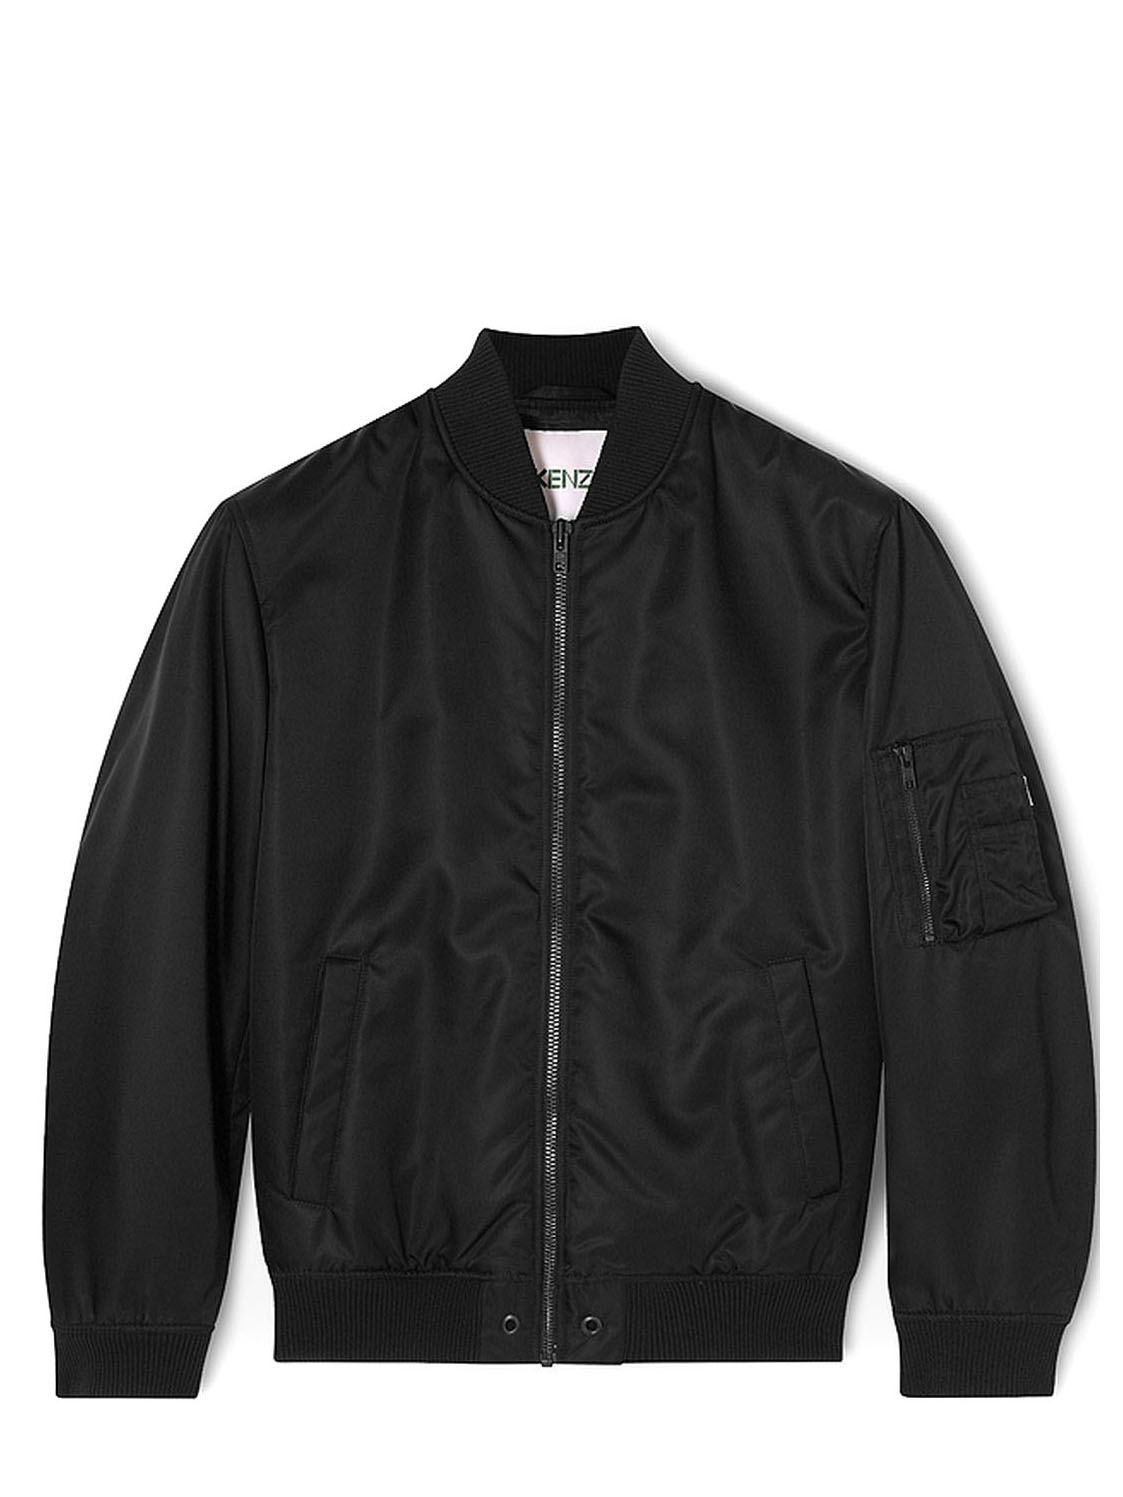 kenzo jacket price